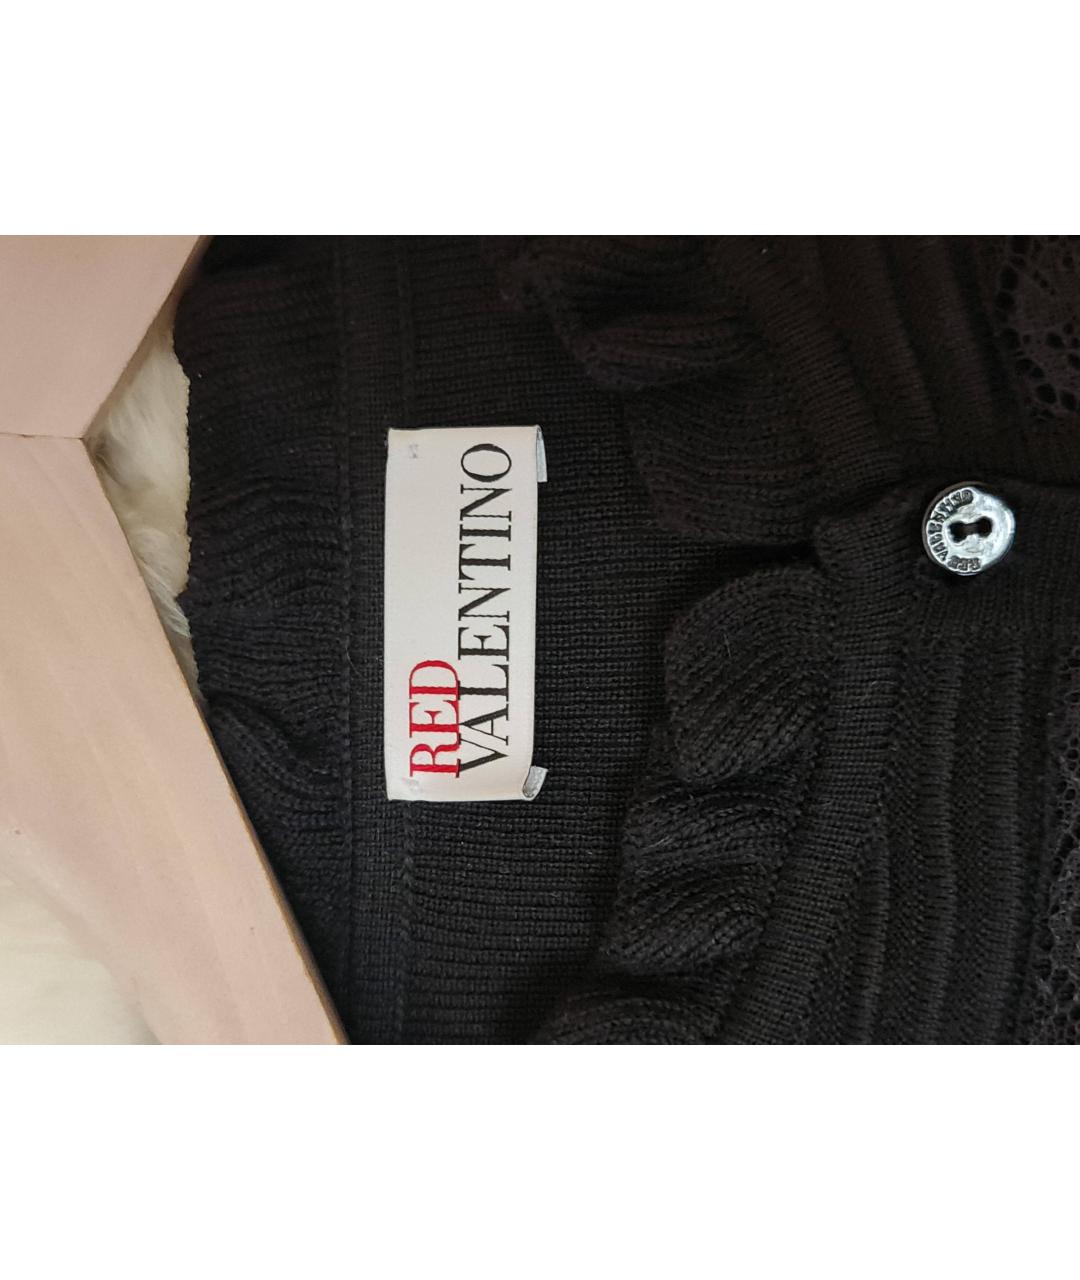 RED VALENTINO Черный джемпер / свитер, фото 3